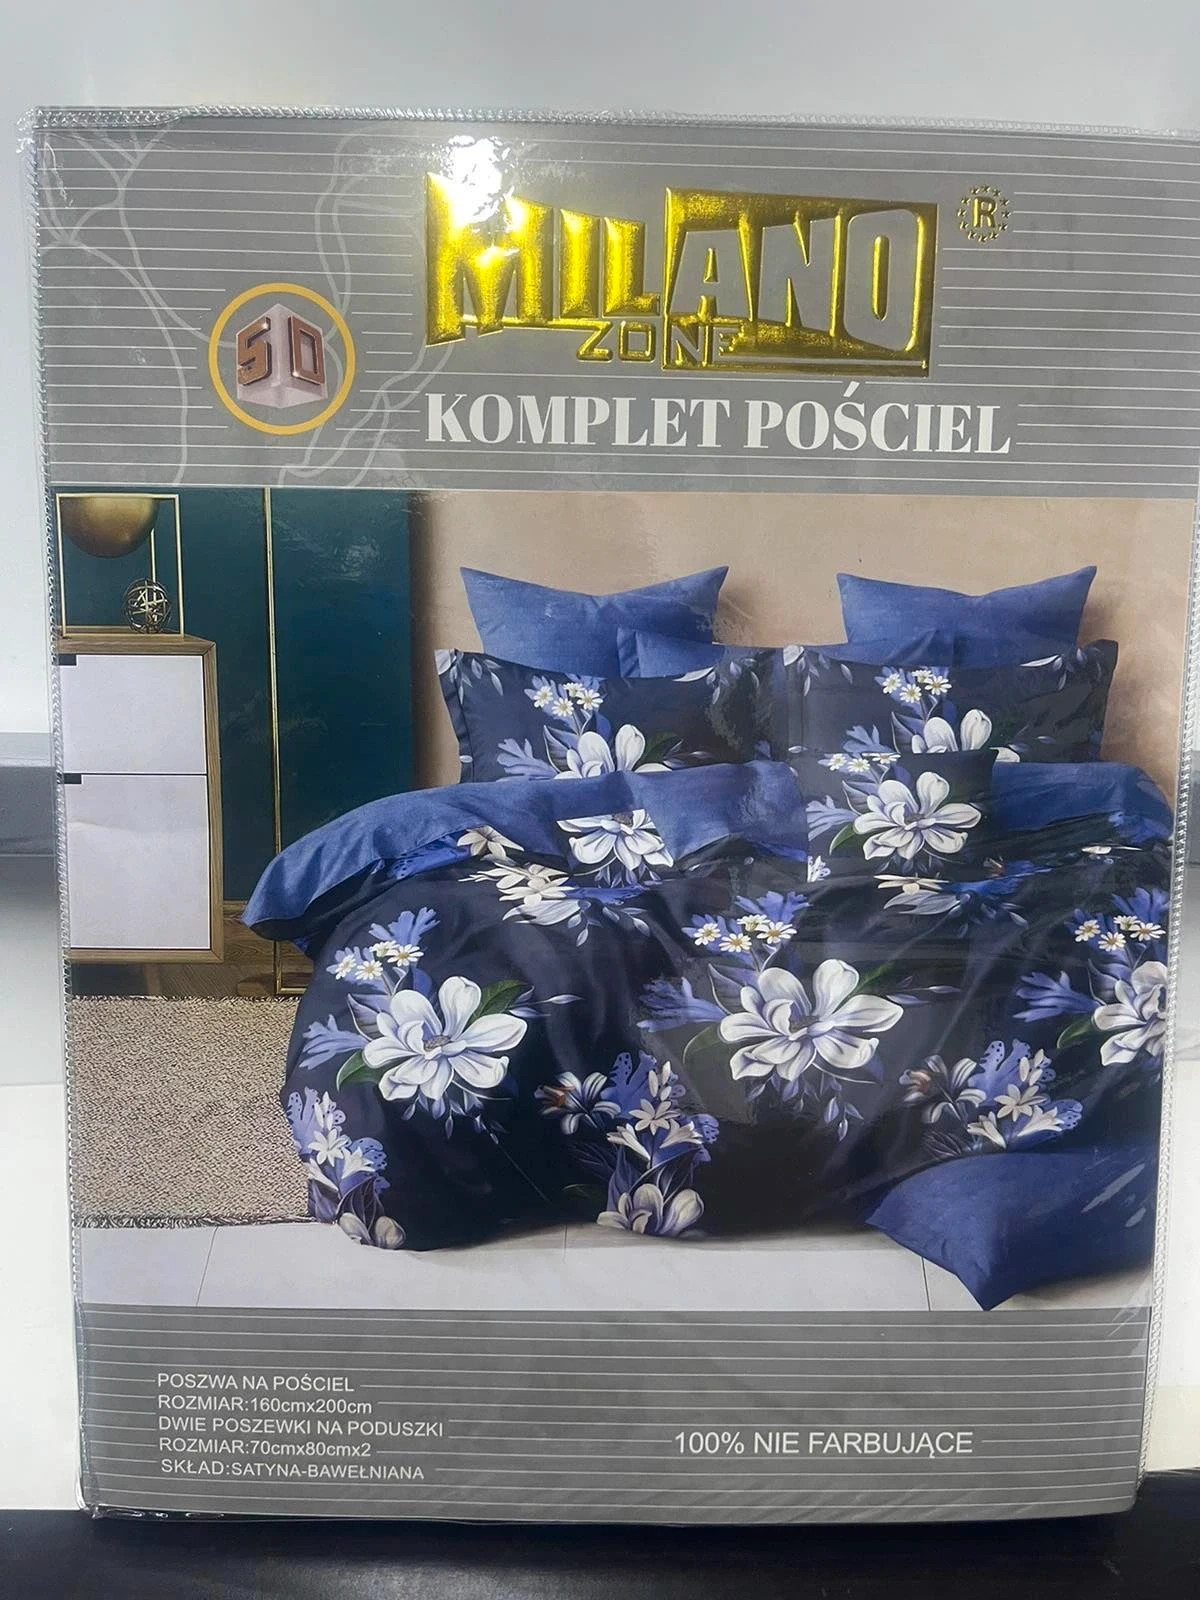 Elegancki Komplet Pościeli Bawełna Kwiaty Zestaw Prezent 160x200